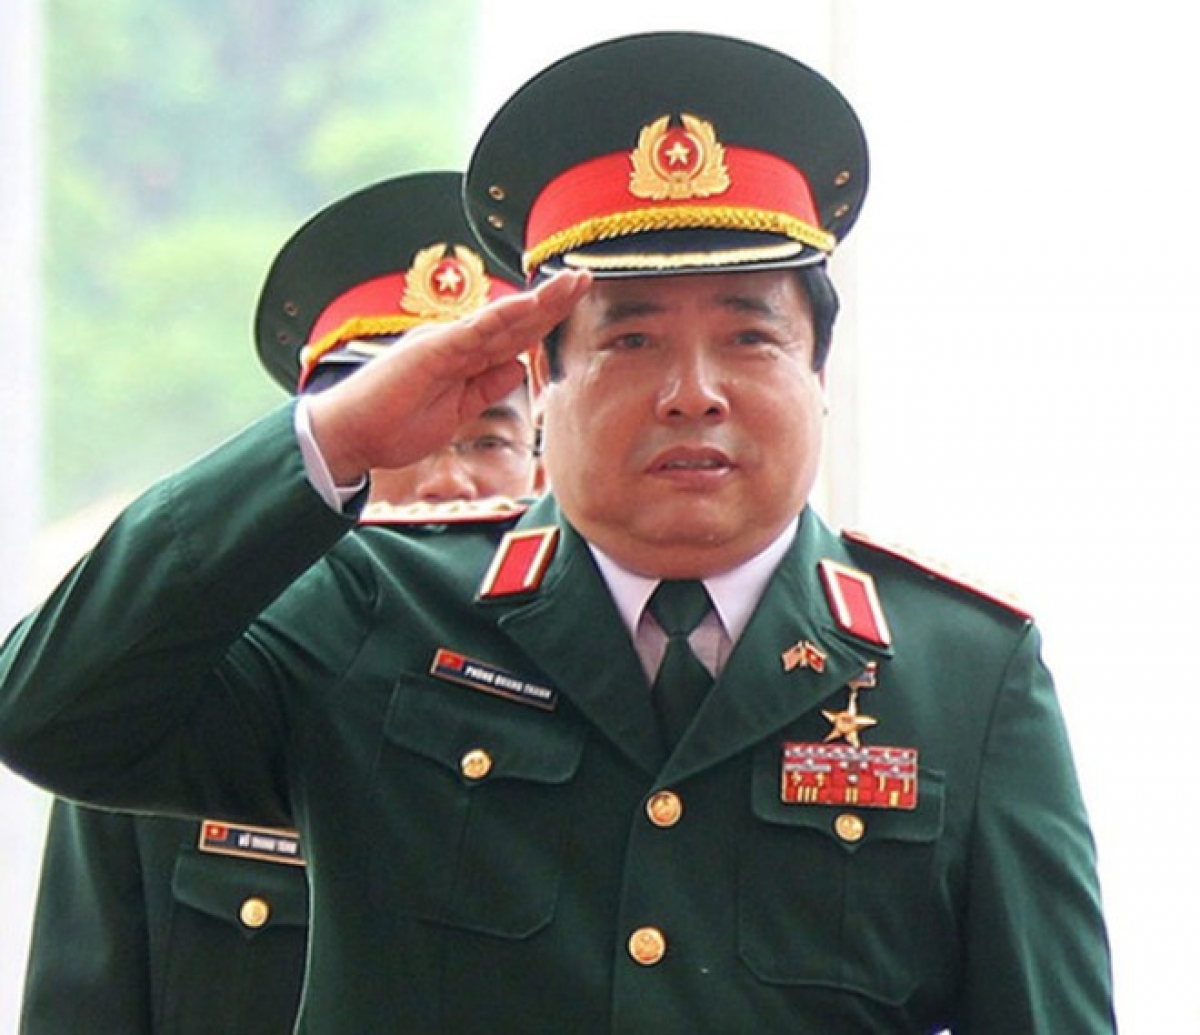 Đại tướng Phùng Quang Thanh từ trần tại nhà riêng - Ảnh 1.